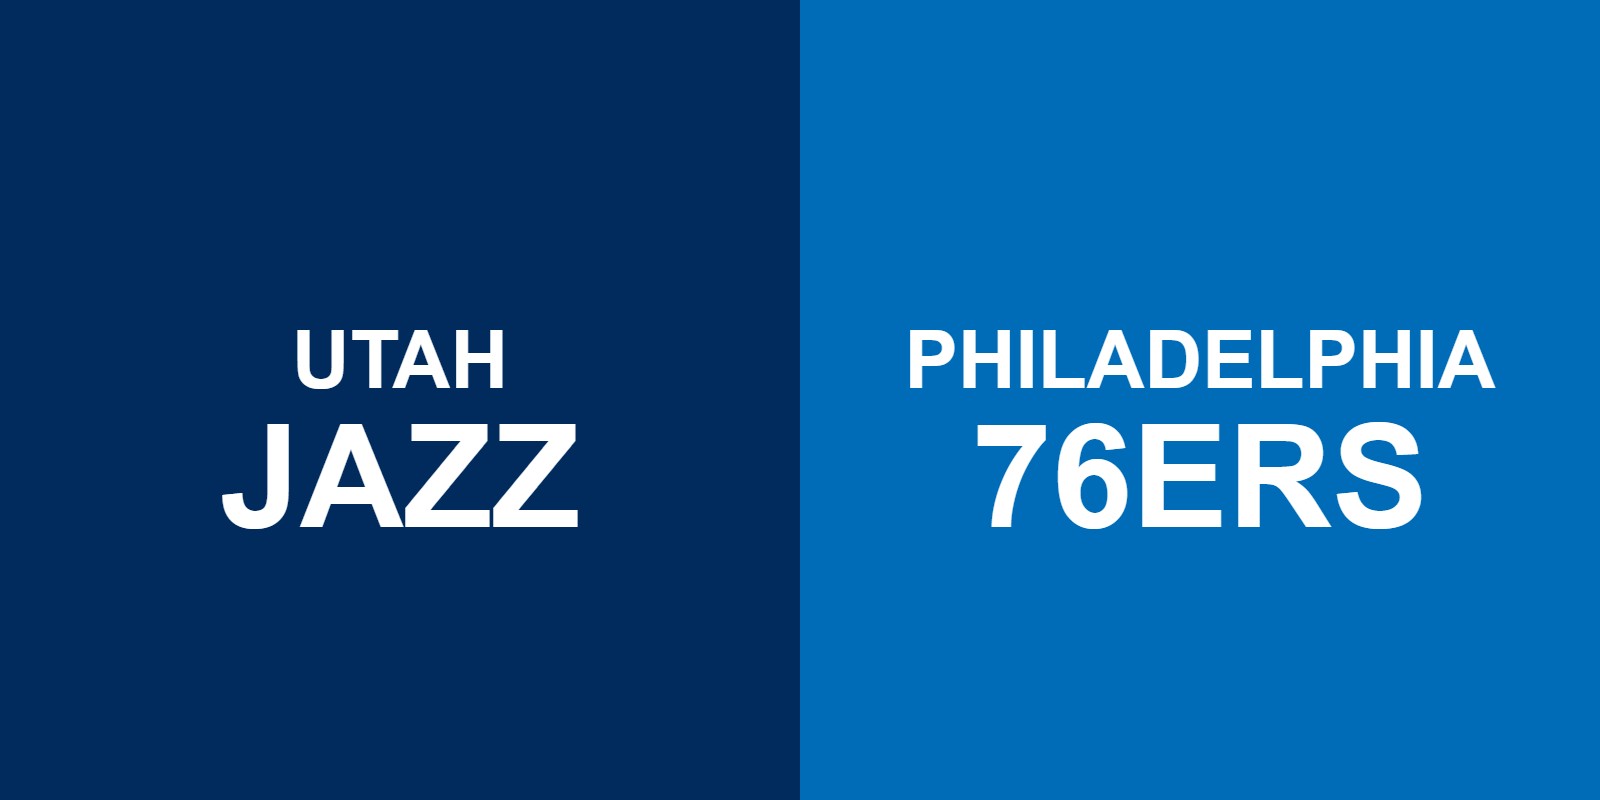 Jazz vs 76ers